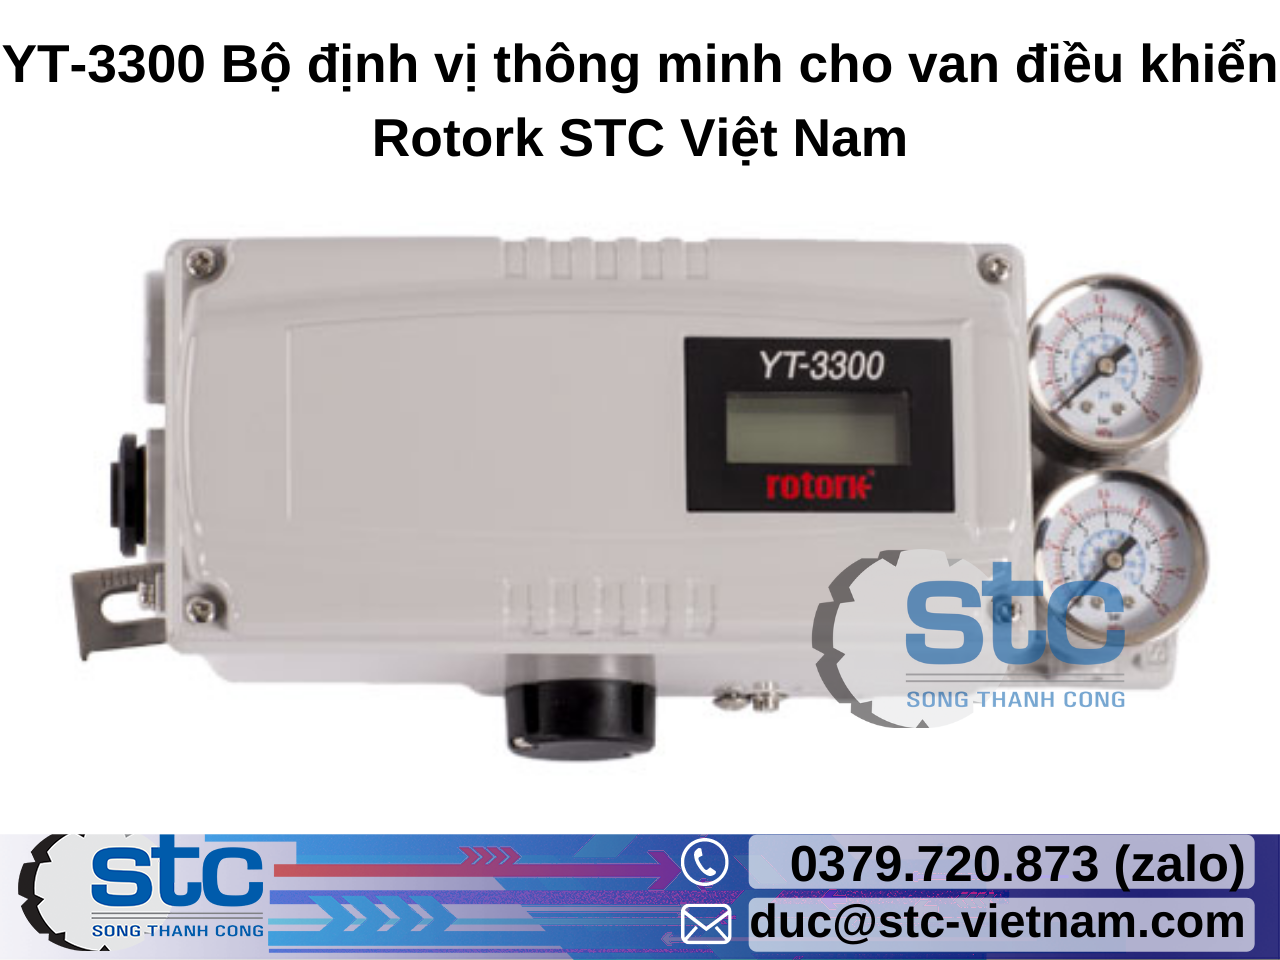 yt-3300-bo-dinh-vi-thong-minh-cho-van-dieu-khien-rotork.png